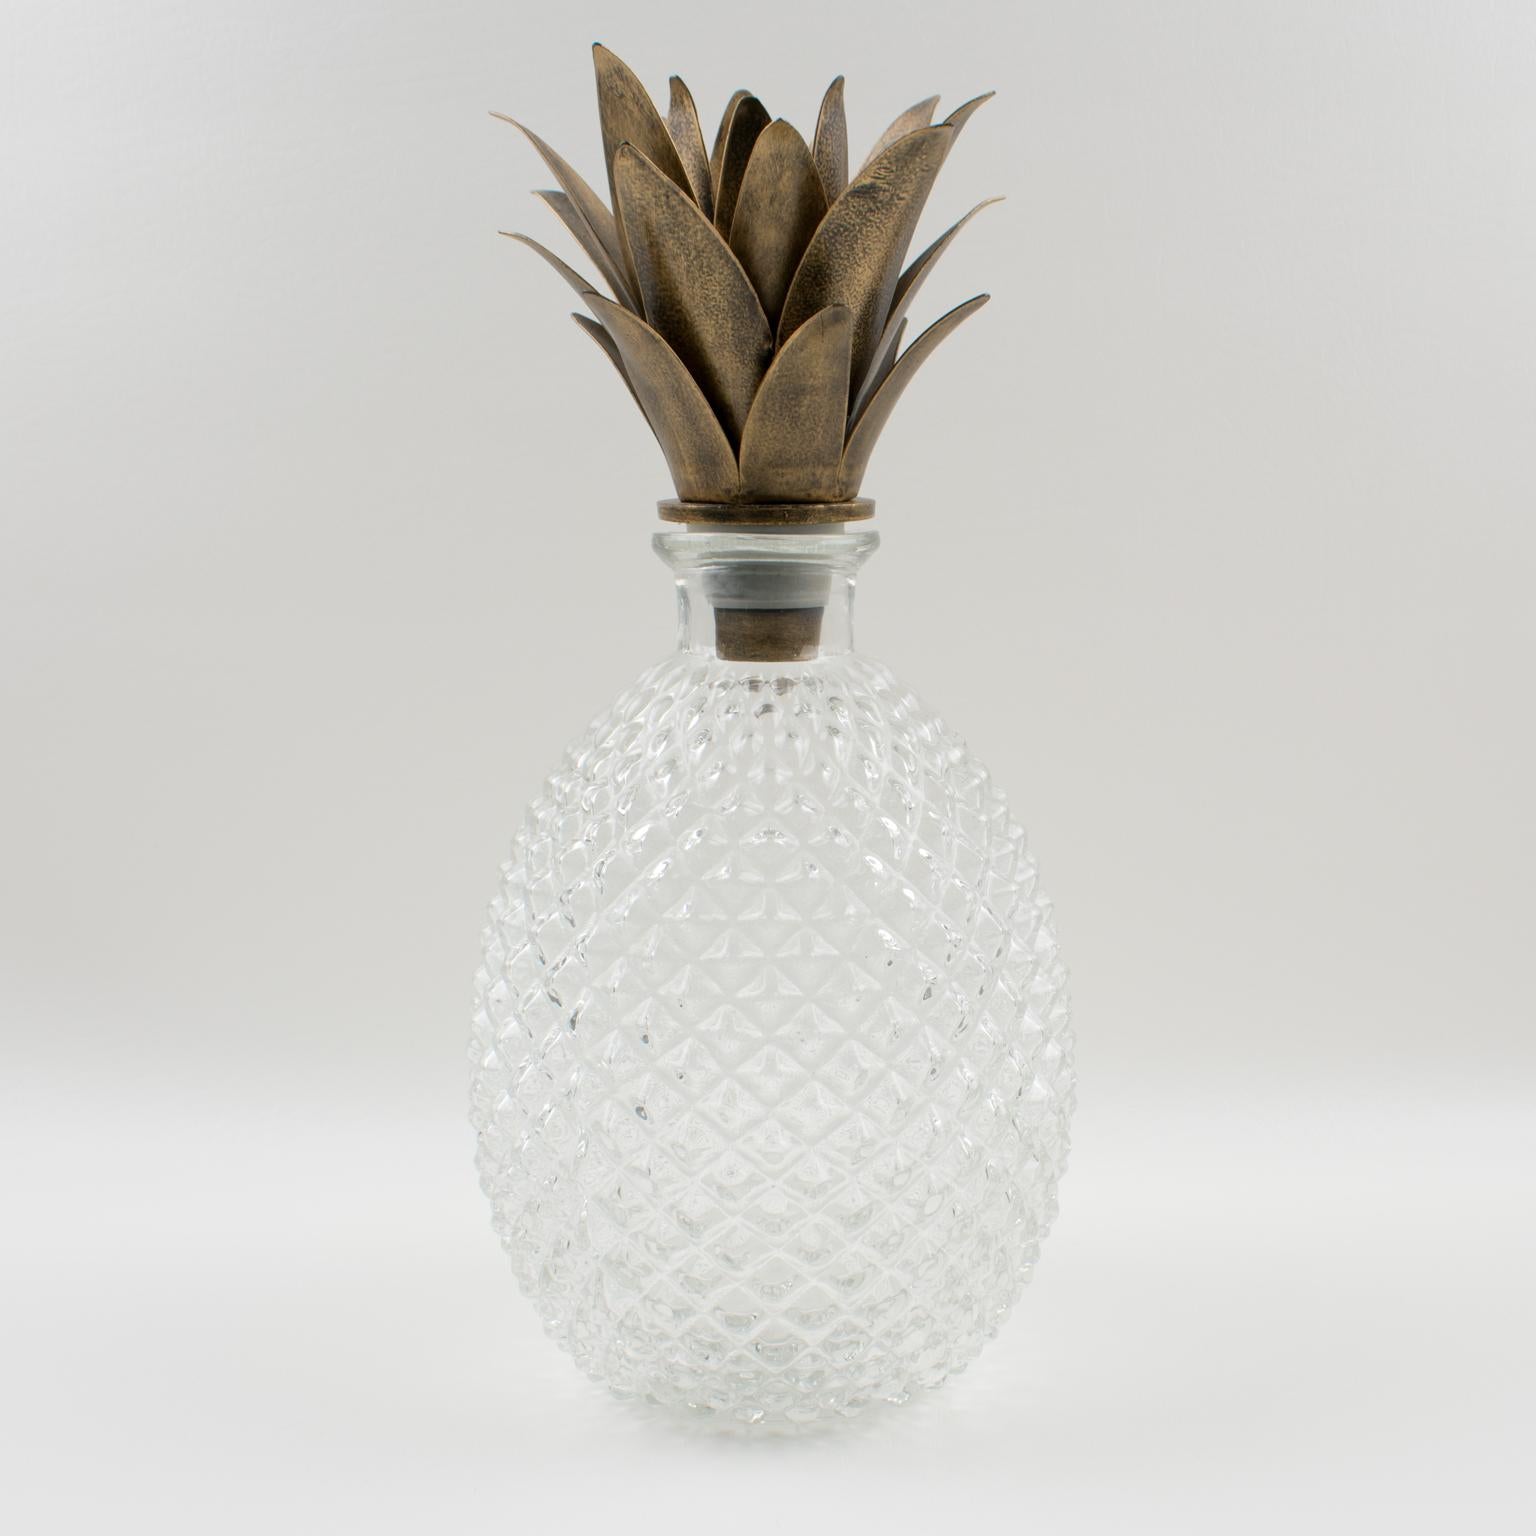 pineapple shaped liquor bottle